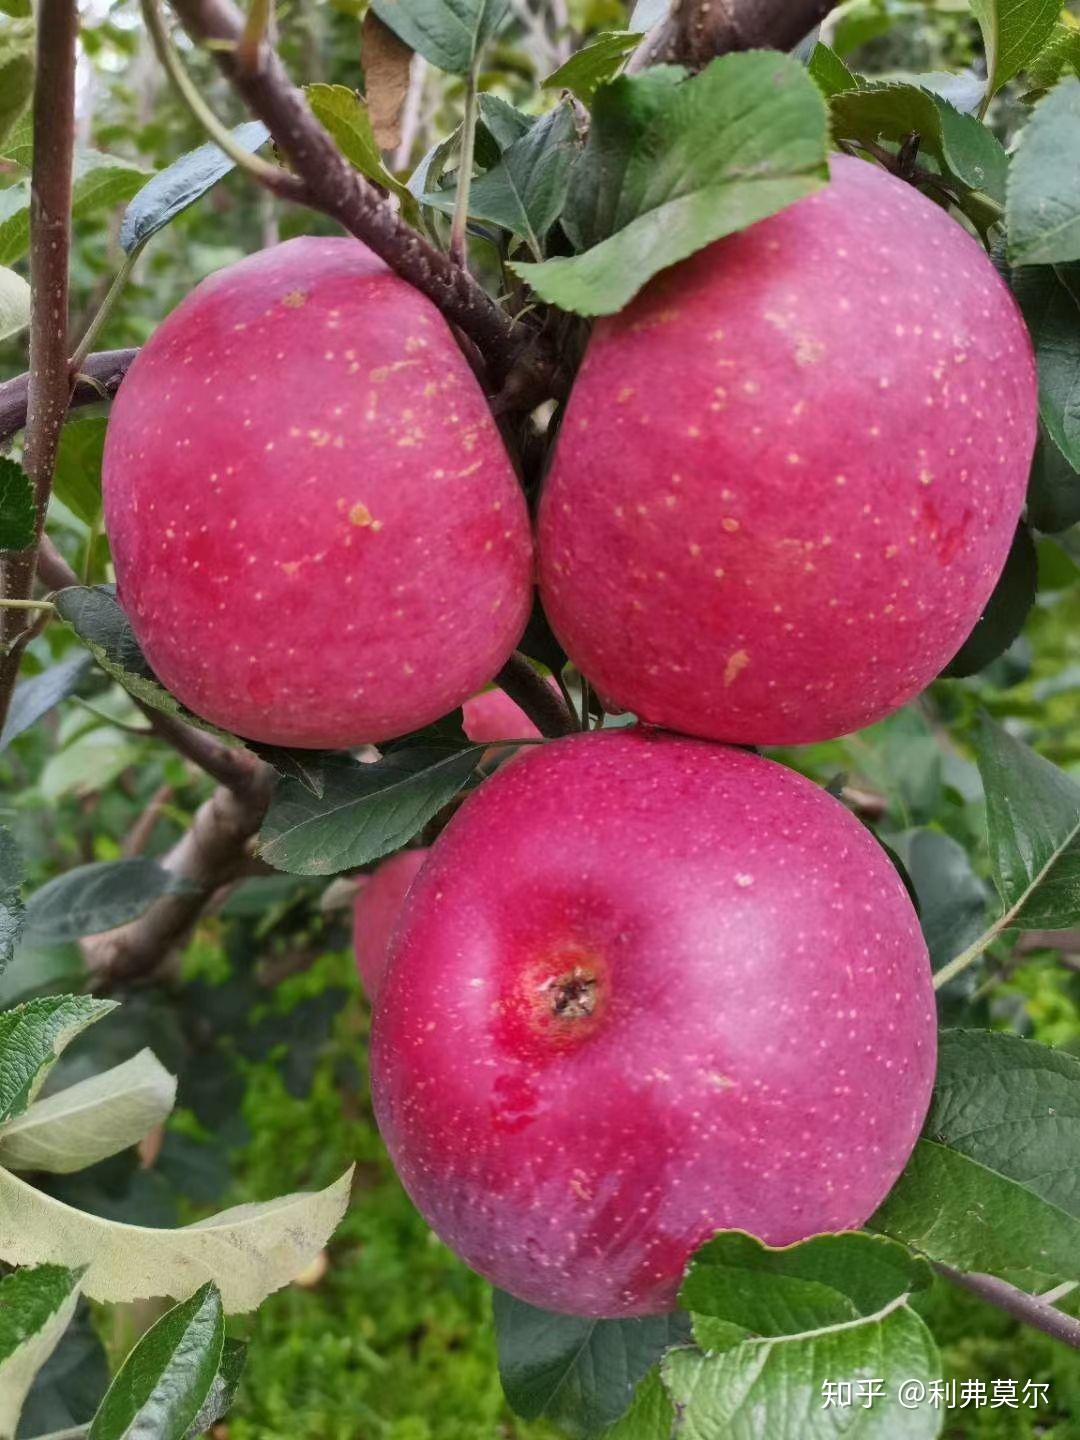 苹果树苹果果实摄影图高清摄影大图-千库网